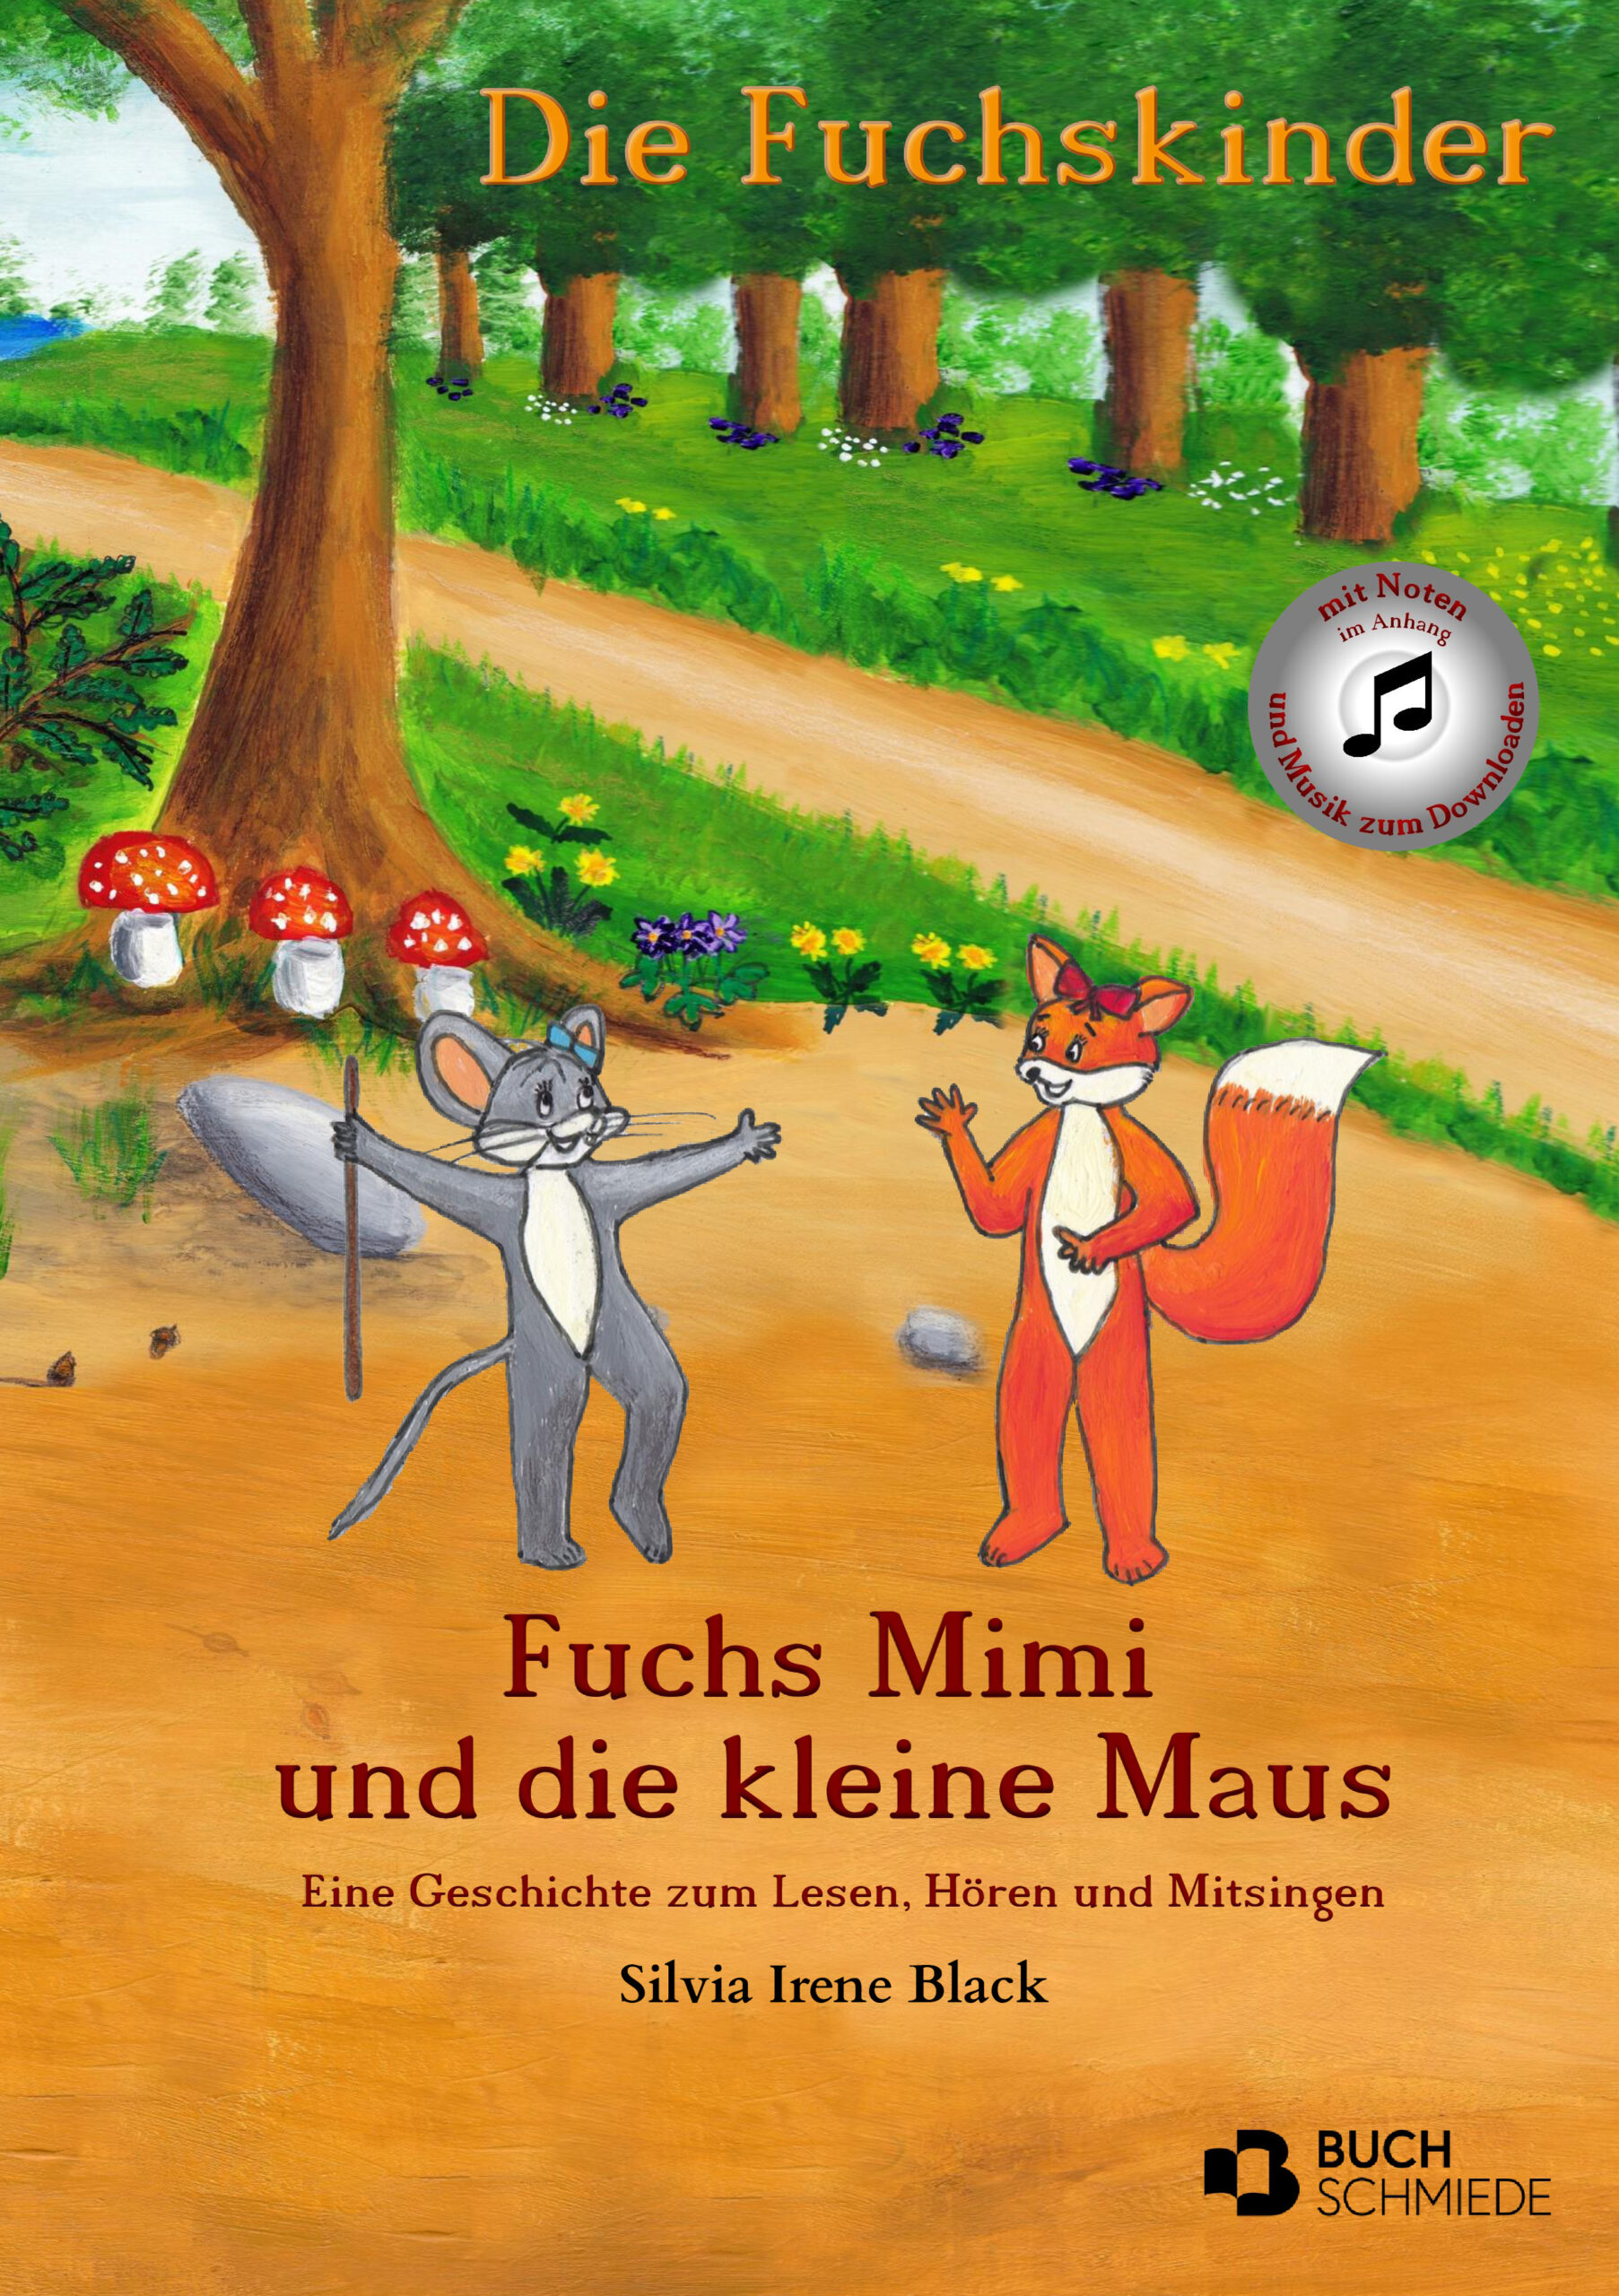 Die Fuchskinder Mimi und die kleine Maus von Silvia Irene Black ist ein liebevolles Bilderbuch zum Thema Freundschaft.